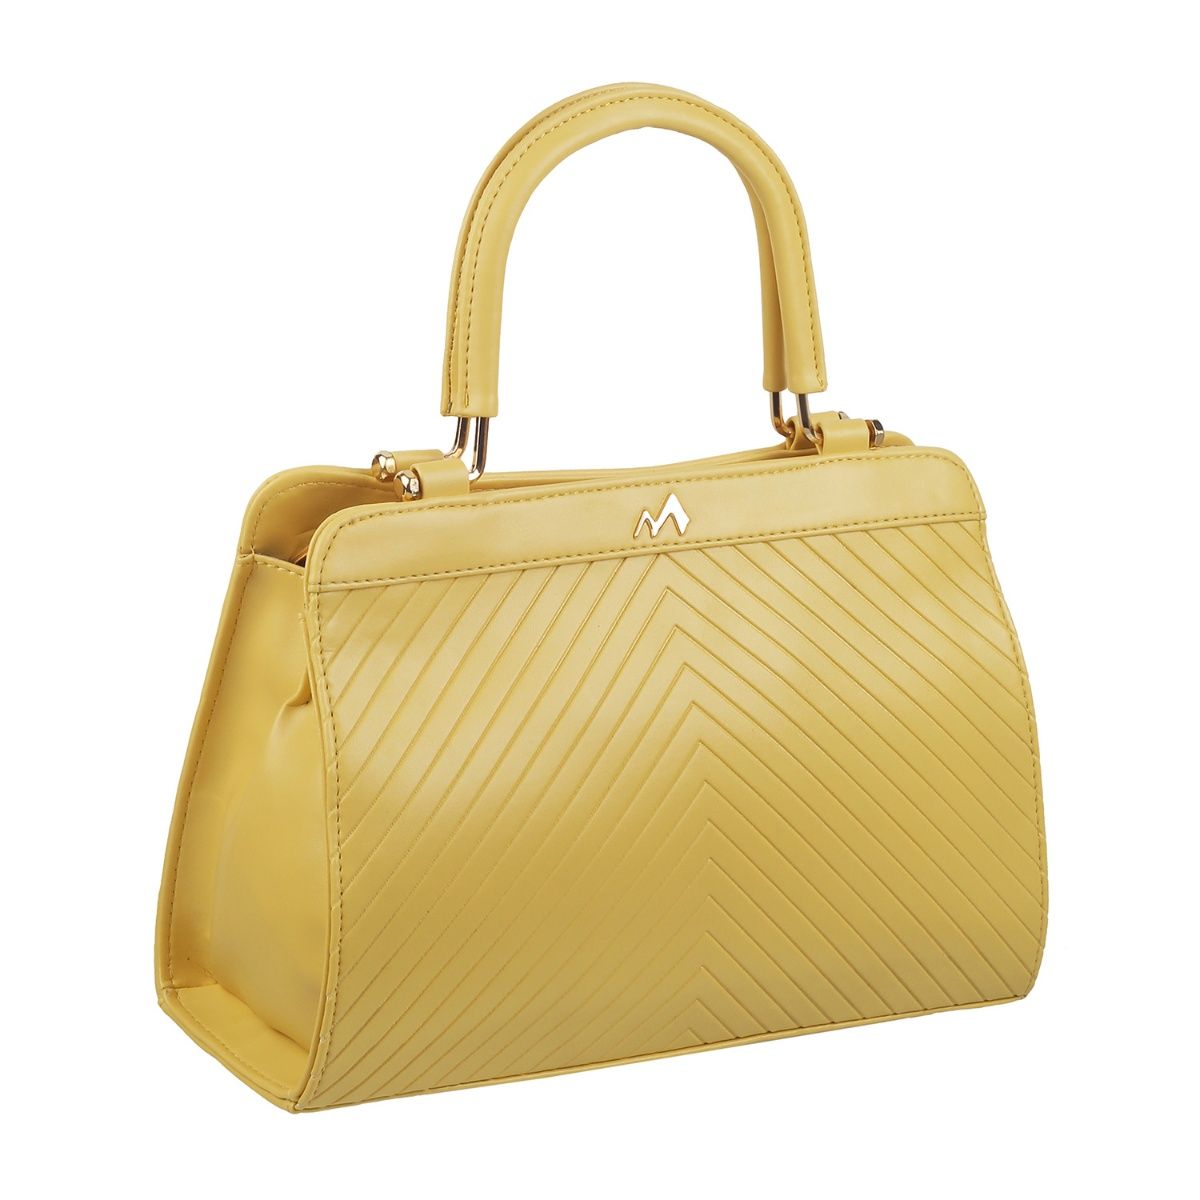 Ladies Premium Leather hand bag 997430 – SREELEATHERS